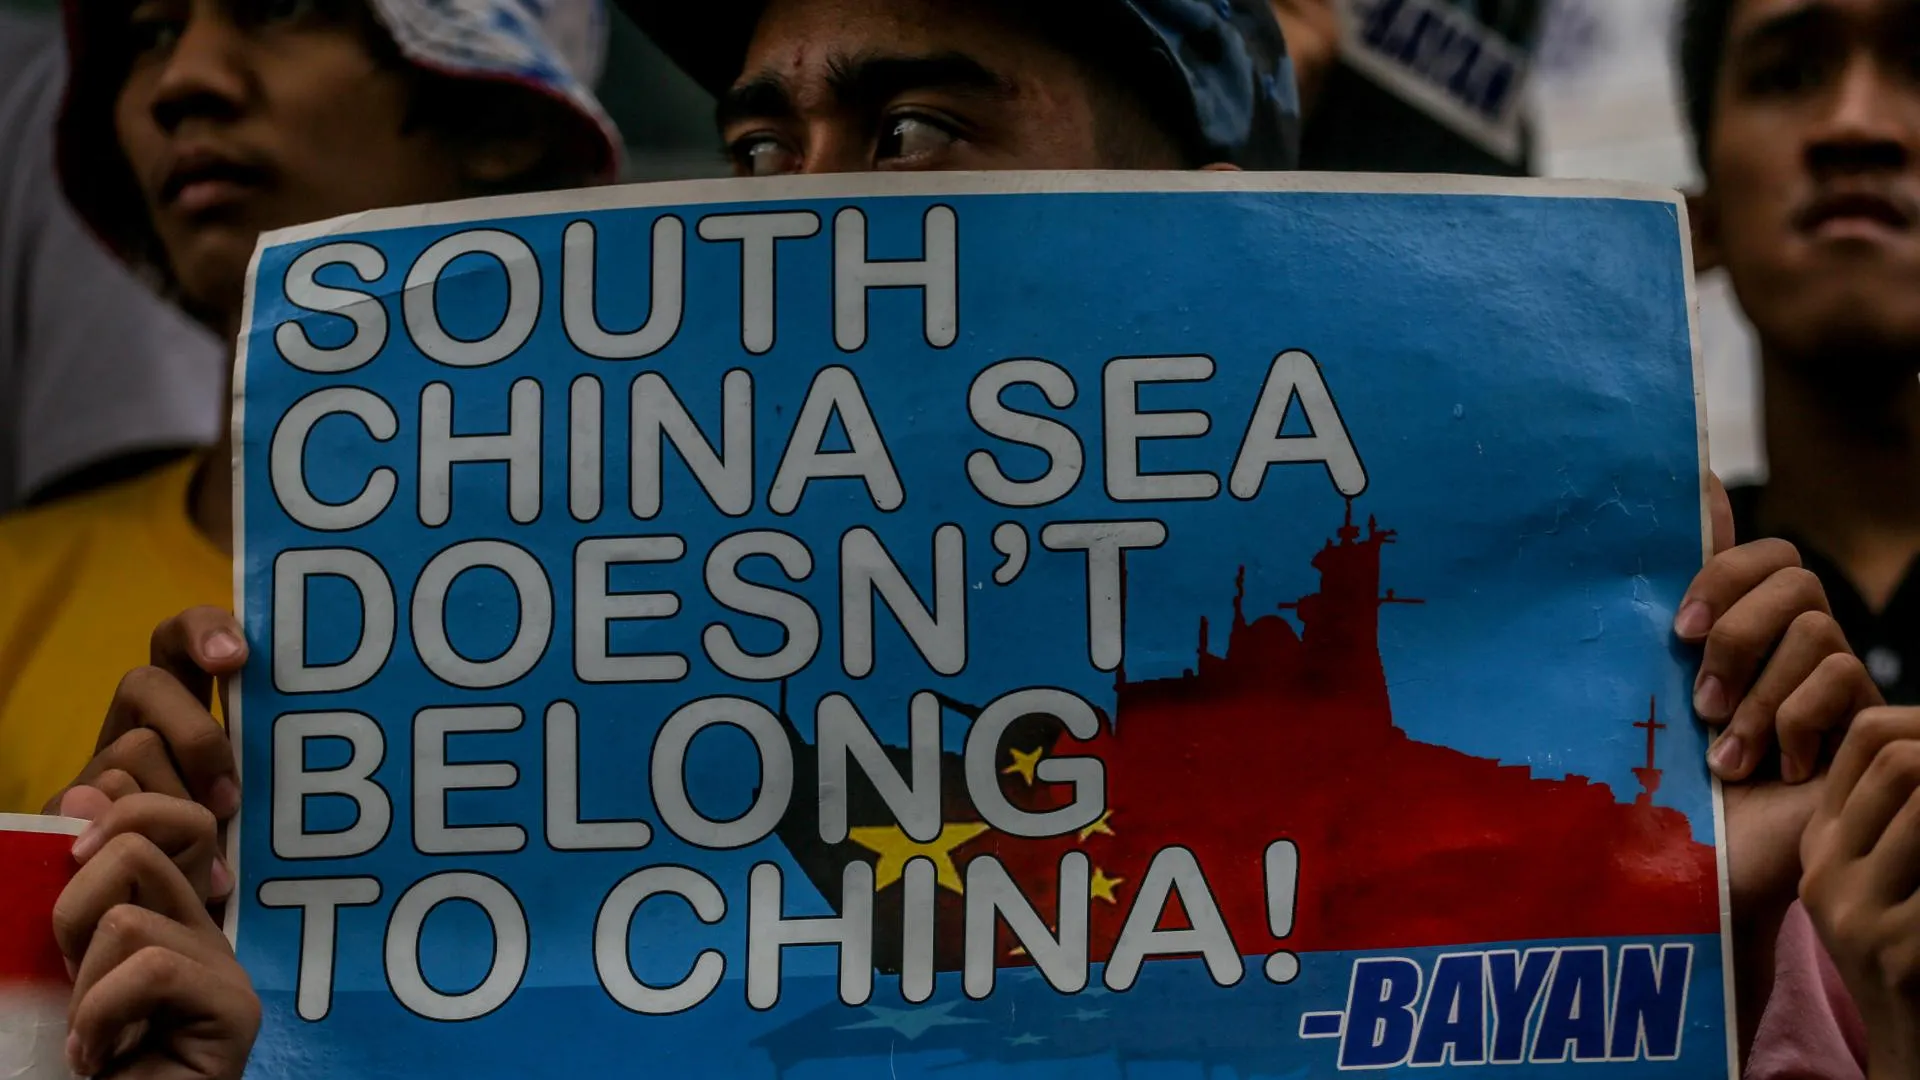 Последнее американское предупреждение. США пригрозили Китаю из-за ржавого корабля